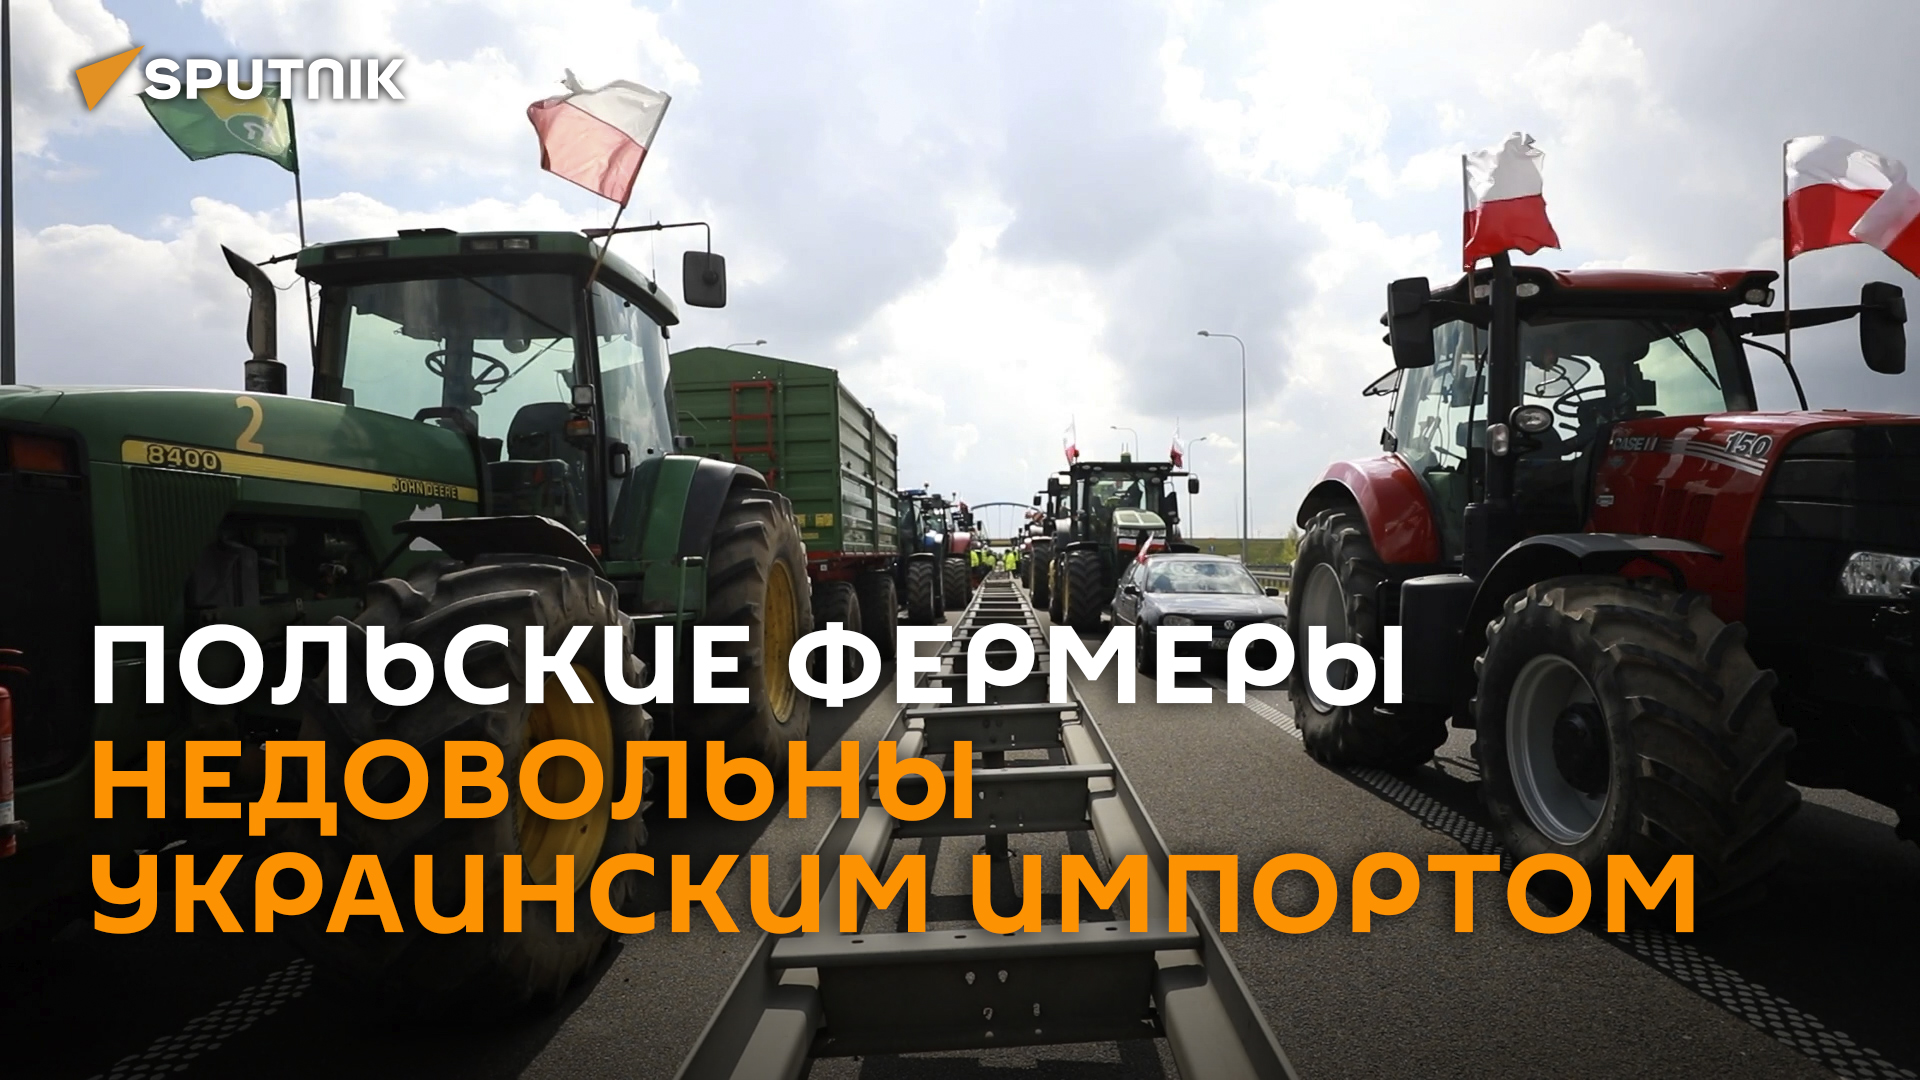 Снова протесты – польские фермеры недовольны дешевым импортом с Украины